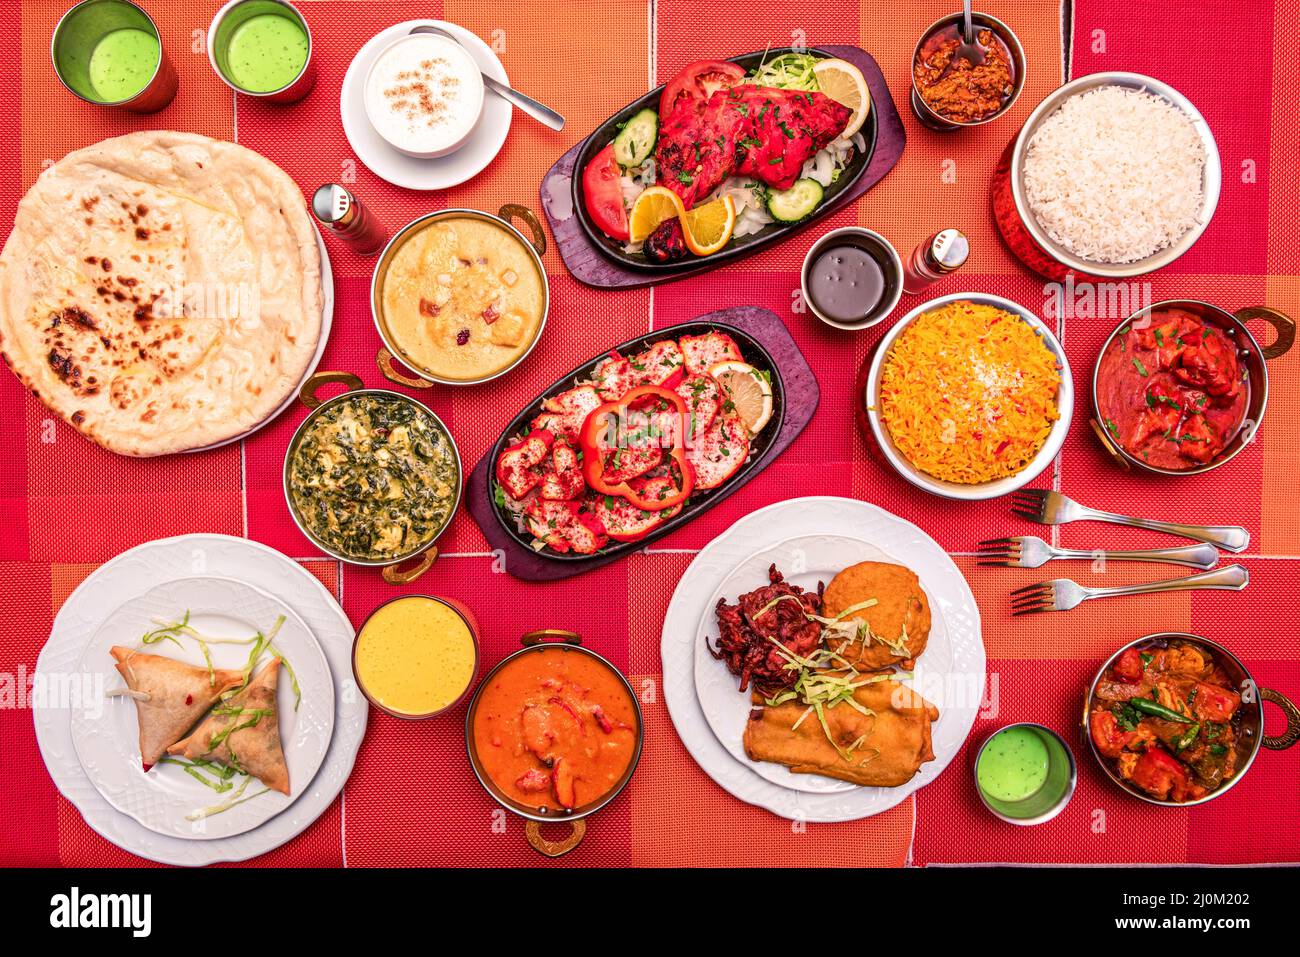 Piatti indiani colorati con vari tipi di curry, naan, paneer palak, agnello, pollo tandoori, tikka masala, antipasti, riso basmati, falafel Foto Stock